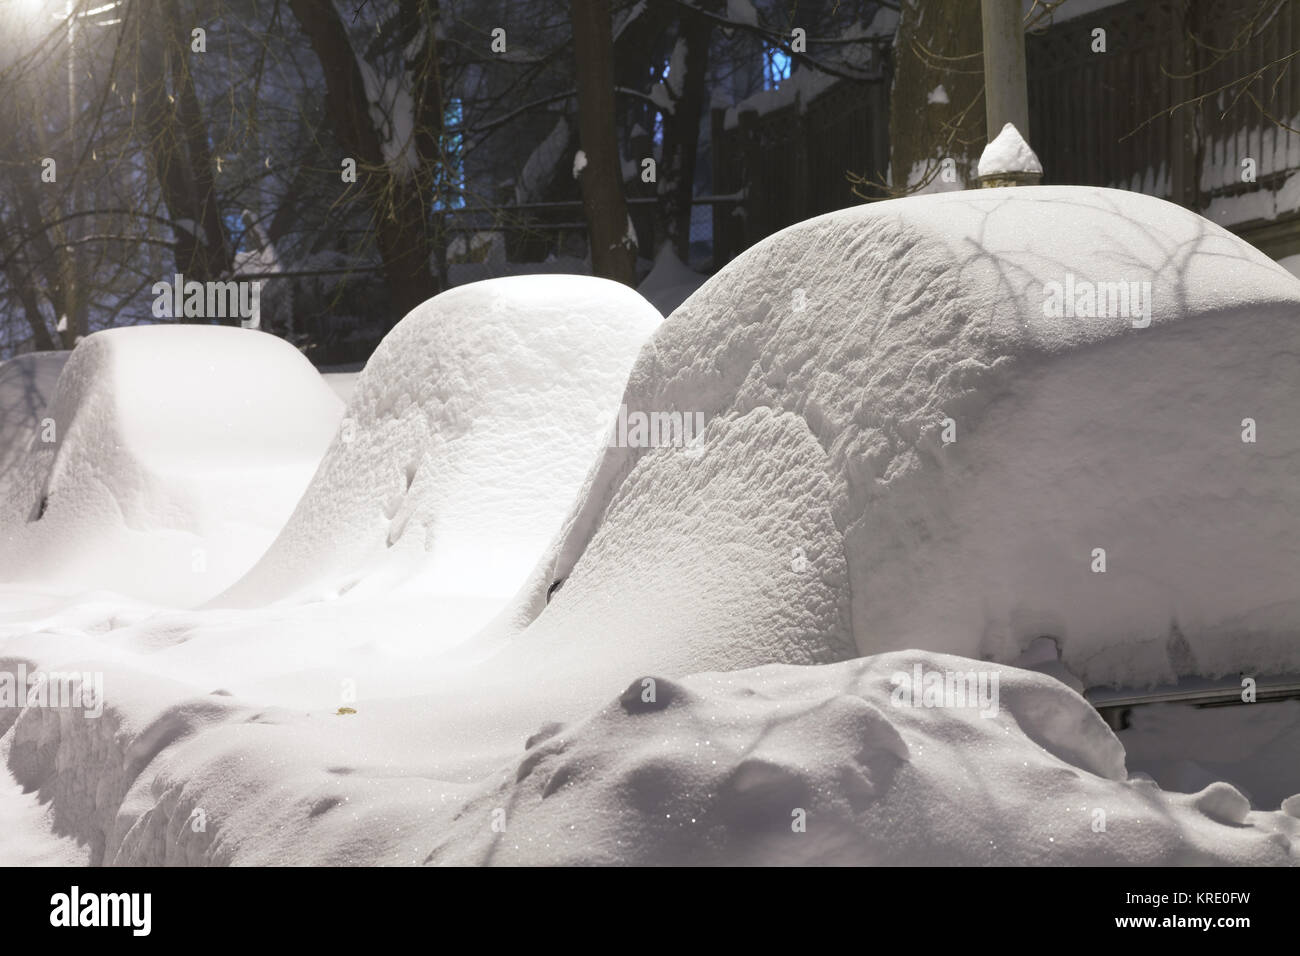 Voitures couvertes de neige après neige dans night city Banque D'Images